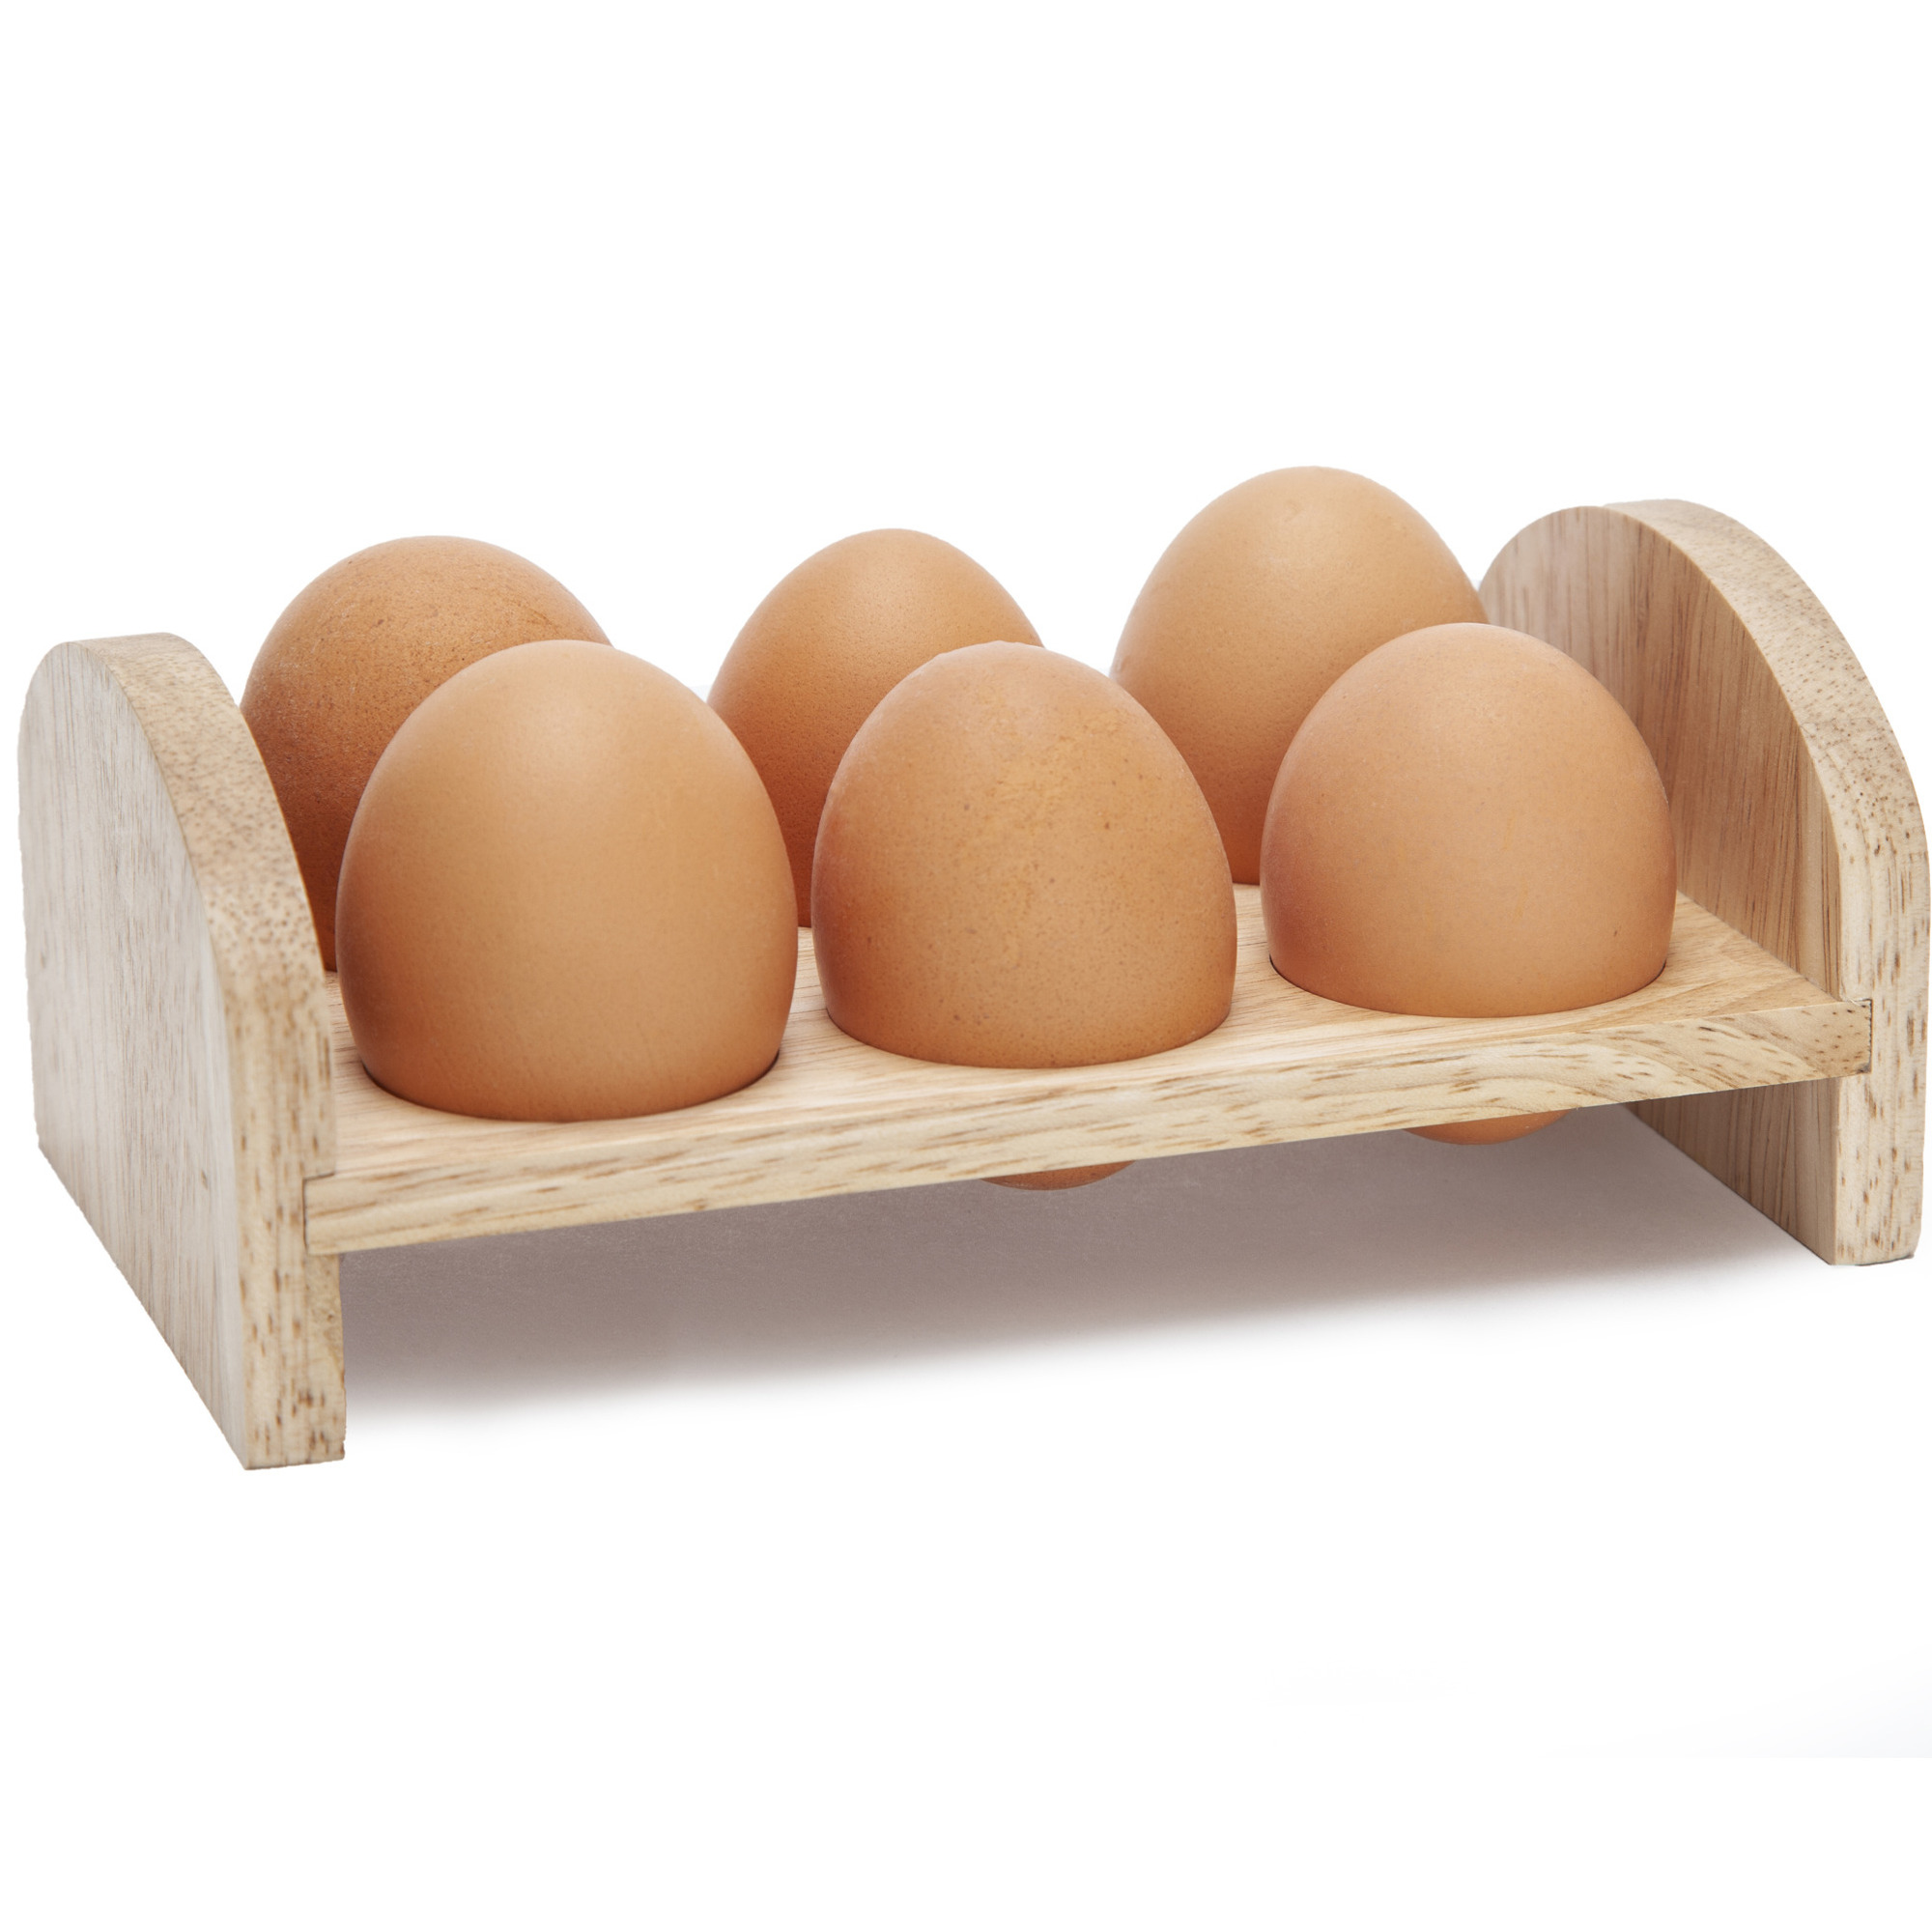 Ei rekje-houder van hout voor 6 eieren 17 x 10 cm